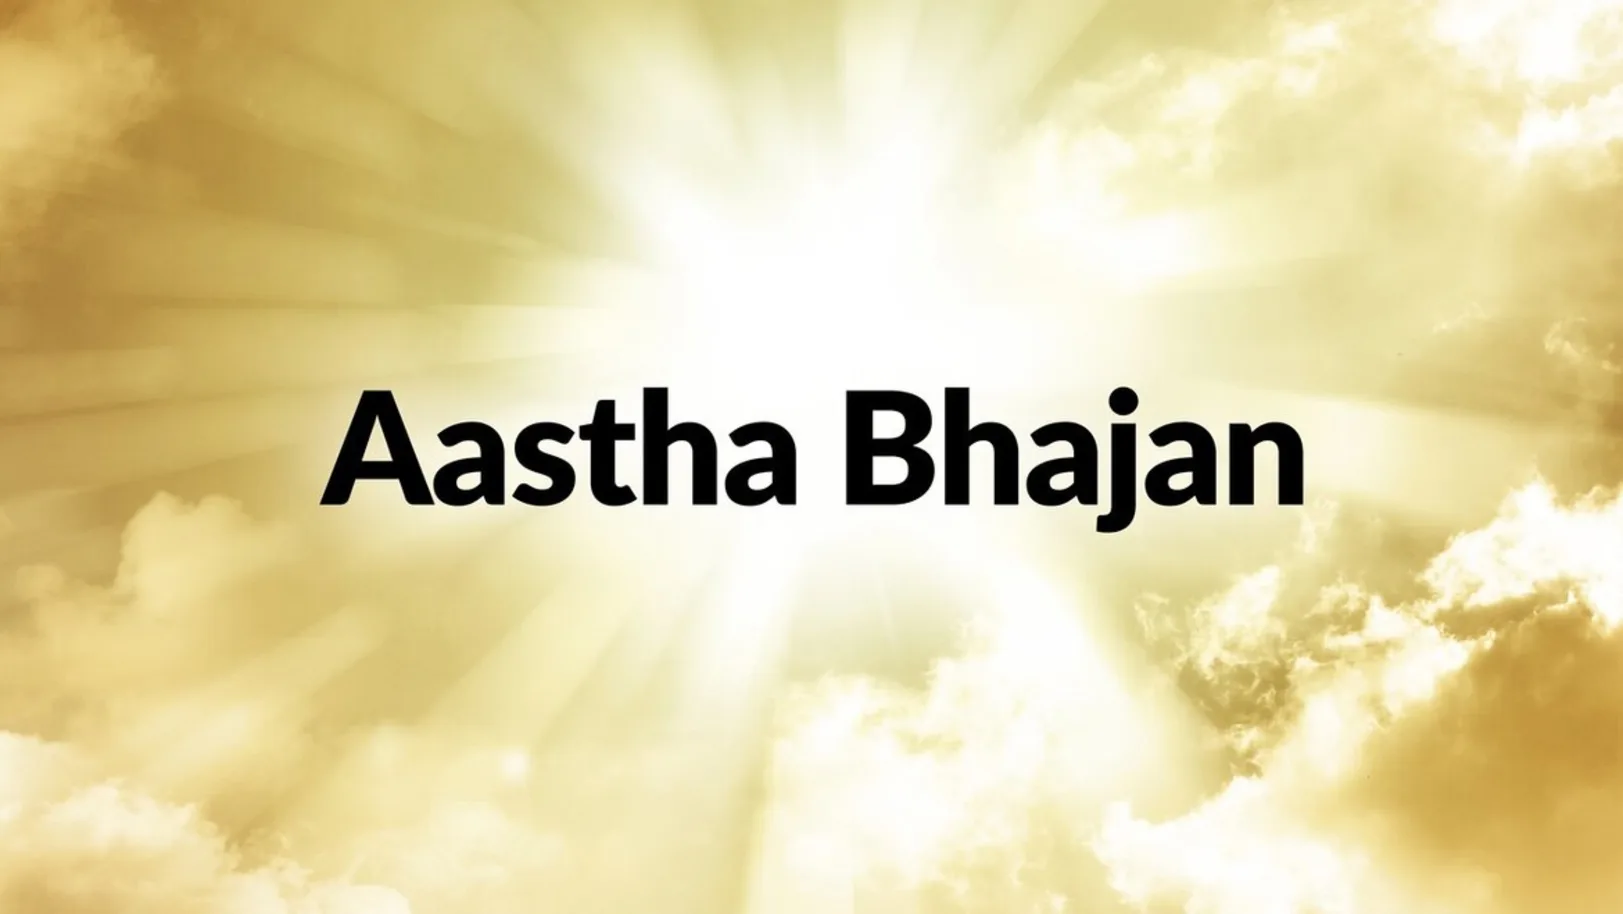 Aastha Bhajan Streaming Now On Aastha Bhajan